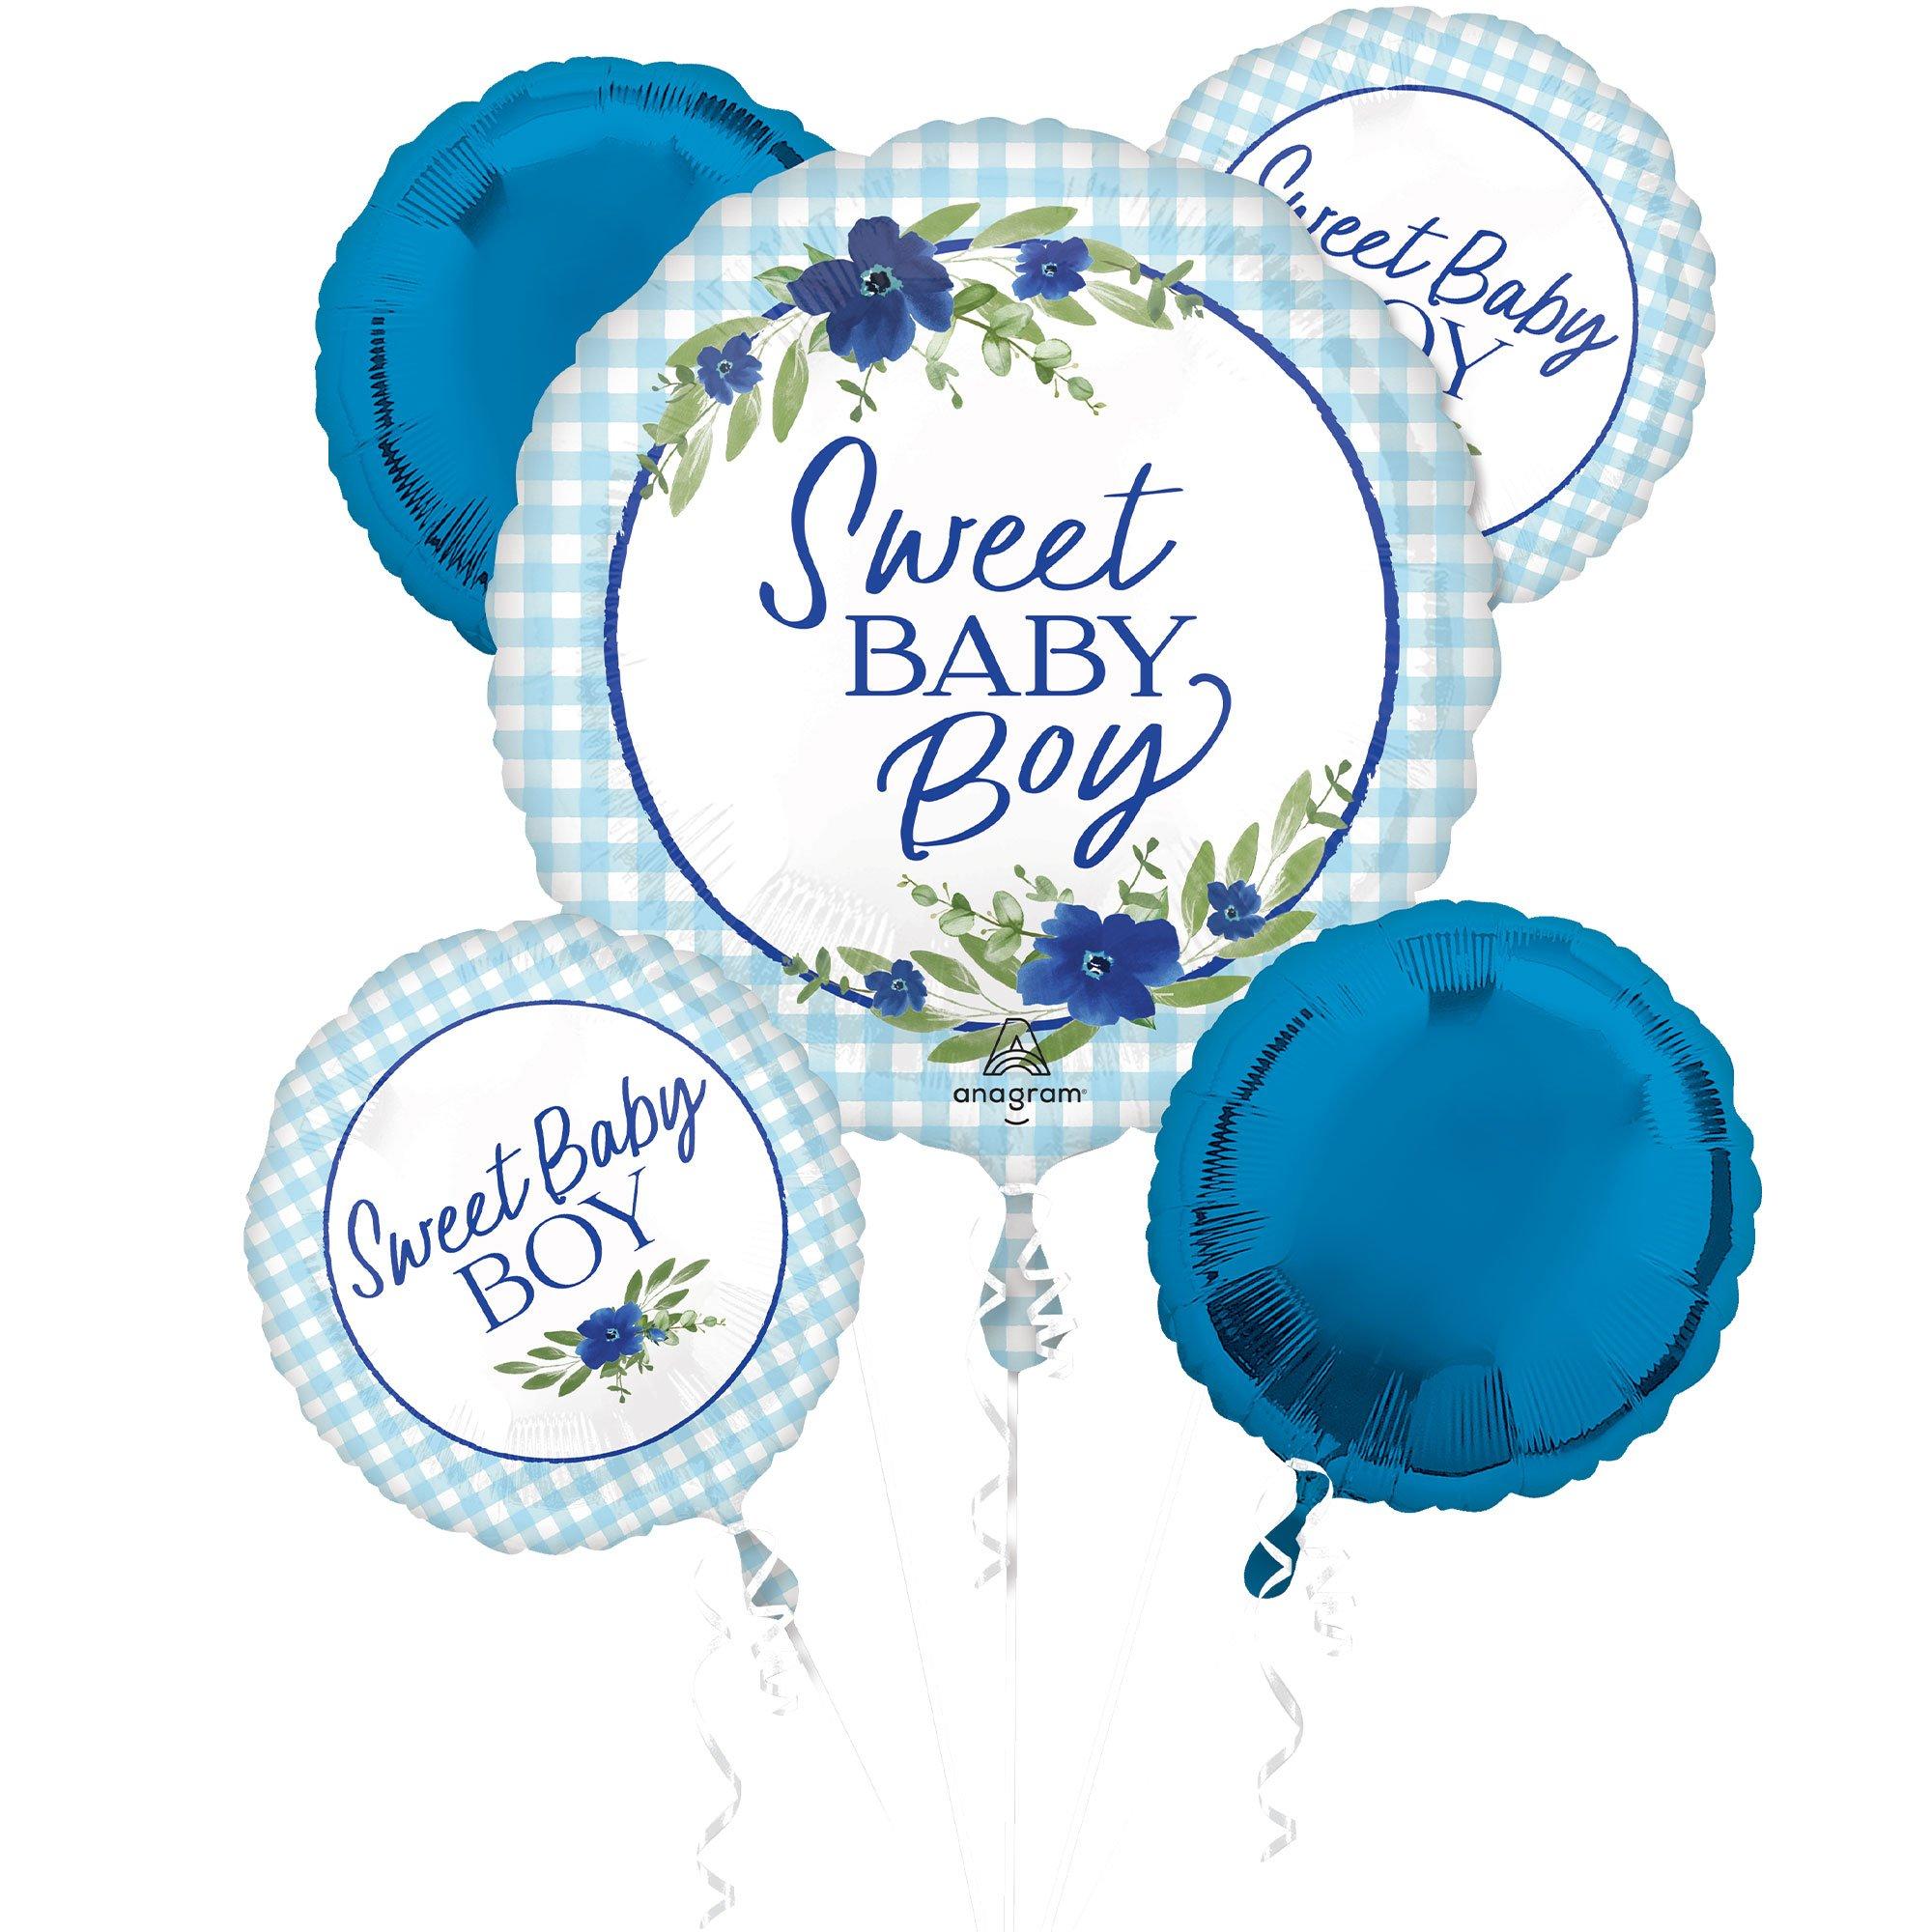 Sweet Baby Boy Baby in Bloom Foil Balloon Bouquet, 5pc